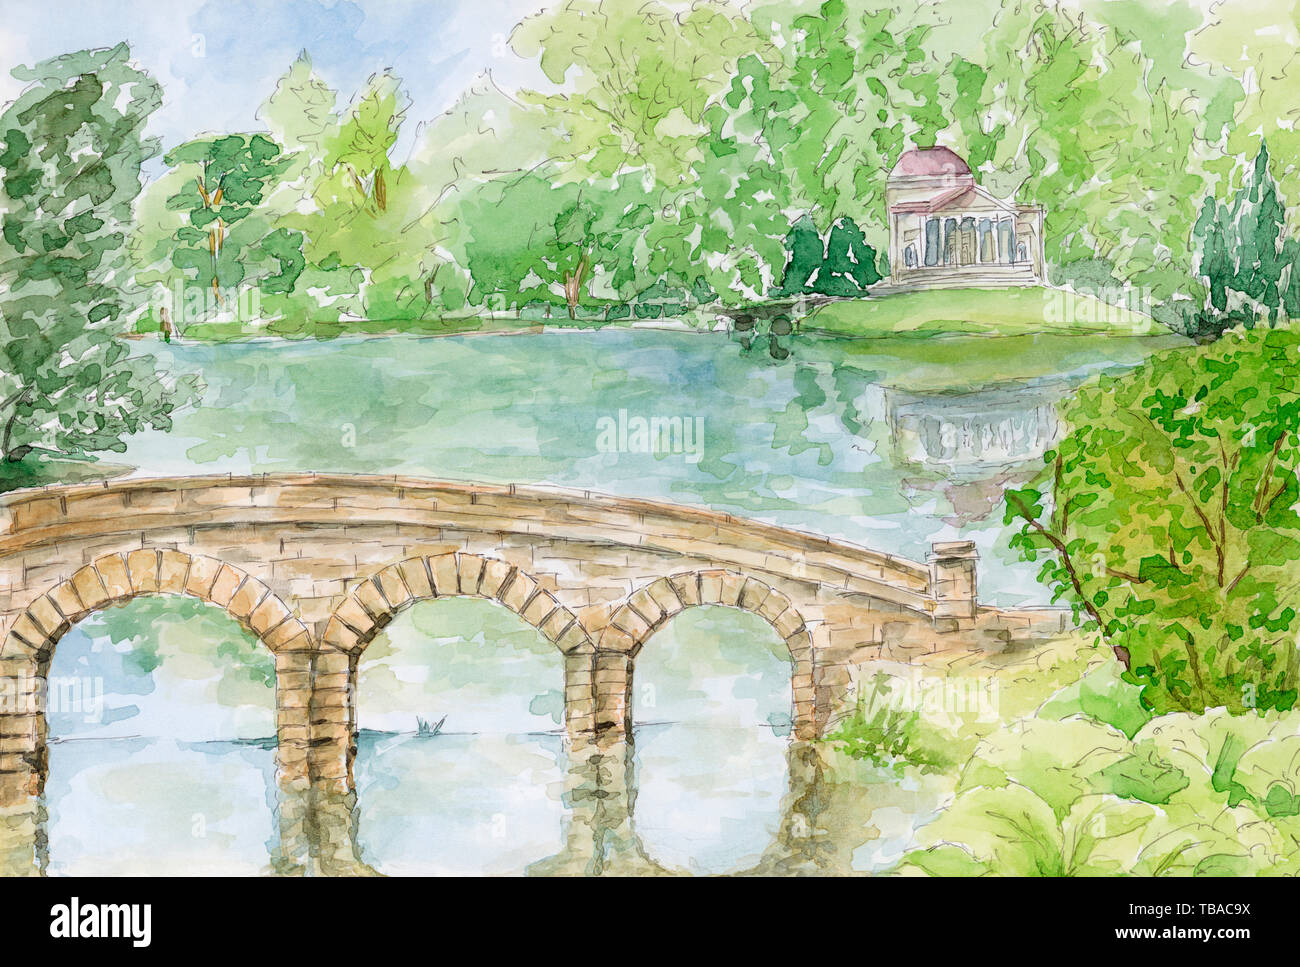 Stourhead Garden. Le pont palladien et Panthéon. Stourhead, UK. Crayon et aquarelle sur papier. Banque D'Images